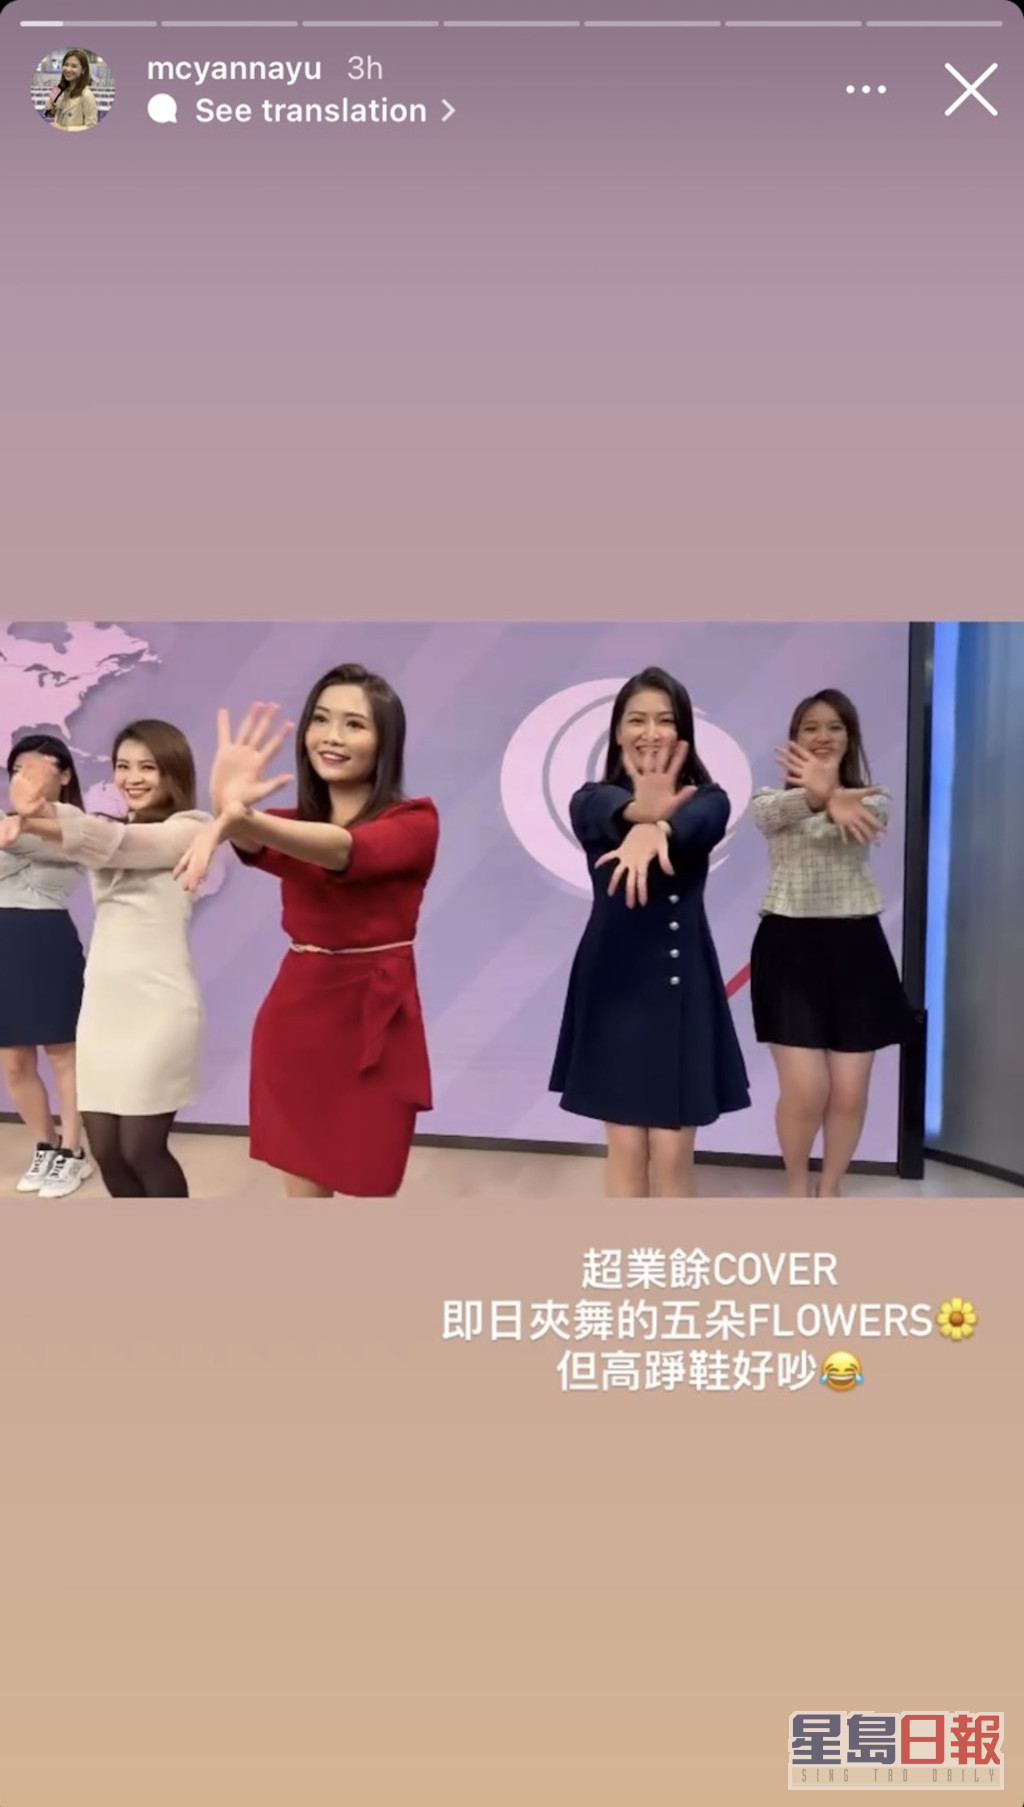 當日五位主播在新聞佈景板前大跳韓國女團BLACKPINK成員Jisoo的《FLOWER》開花舞。